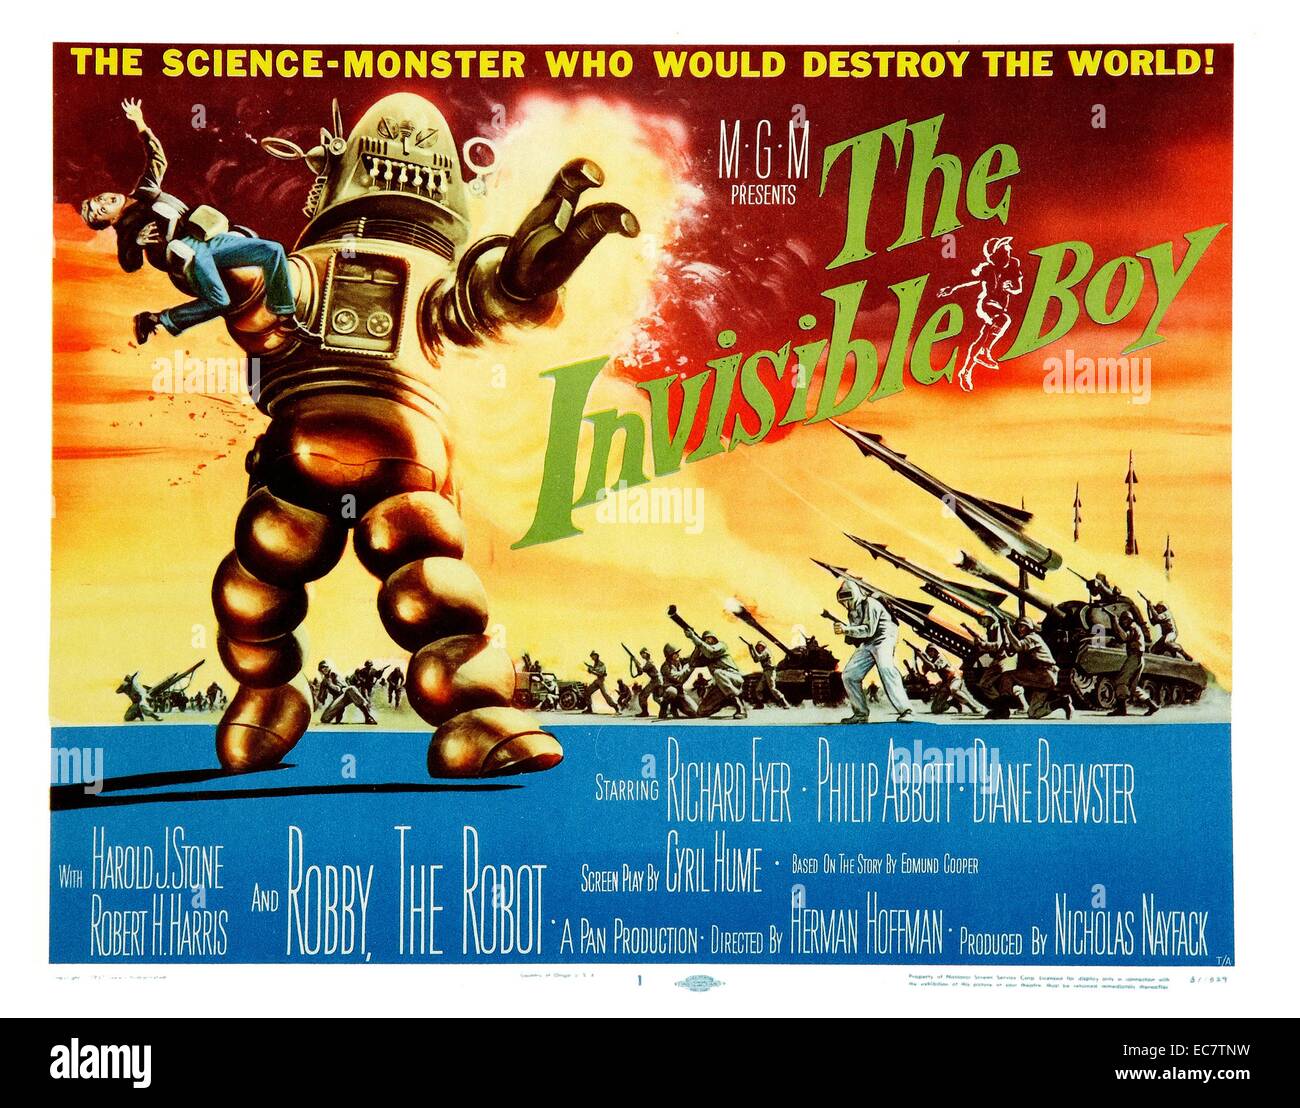 Il ragazzo invisibile, 1957, è un film di fantascienza, diretto da Herman Hoffman, e interpretato da Richard Eyer e Philip Abbott. È la seconda pellicola di aspetto di Robby il robot, science fiction personaggio che 'stole lo spettacolo' nel pianeta proibito (1956). Il film del titolo precedente è stato S.O.S astronave. Foto Stock